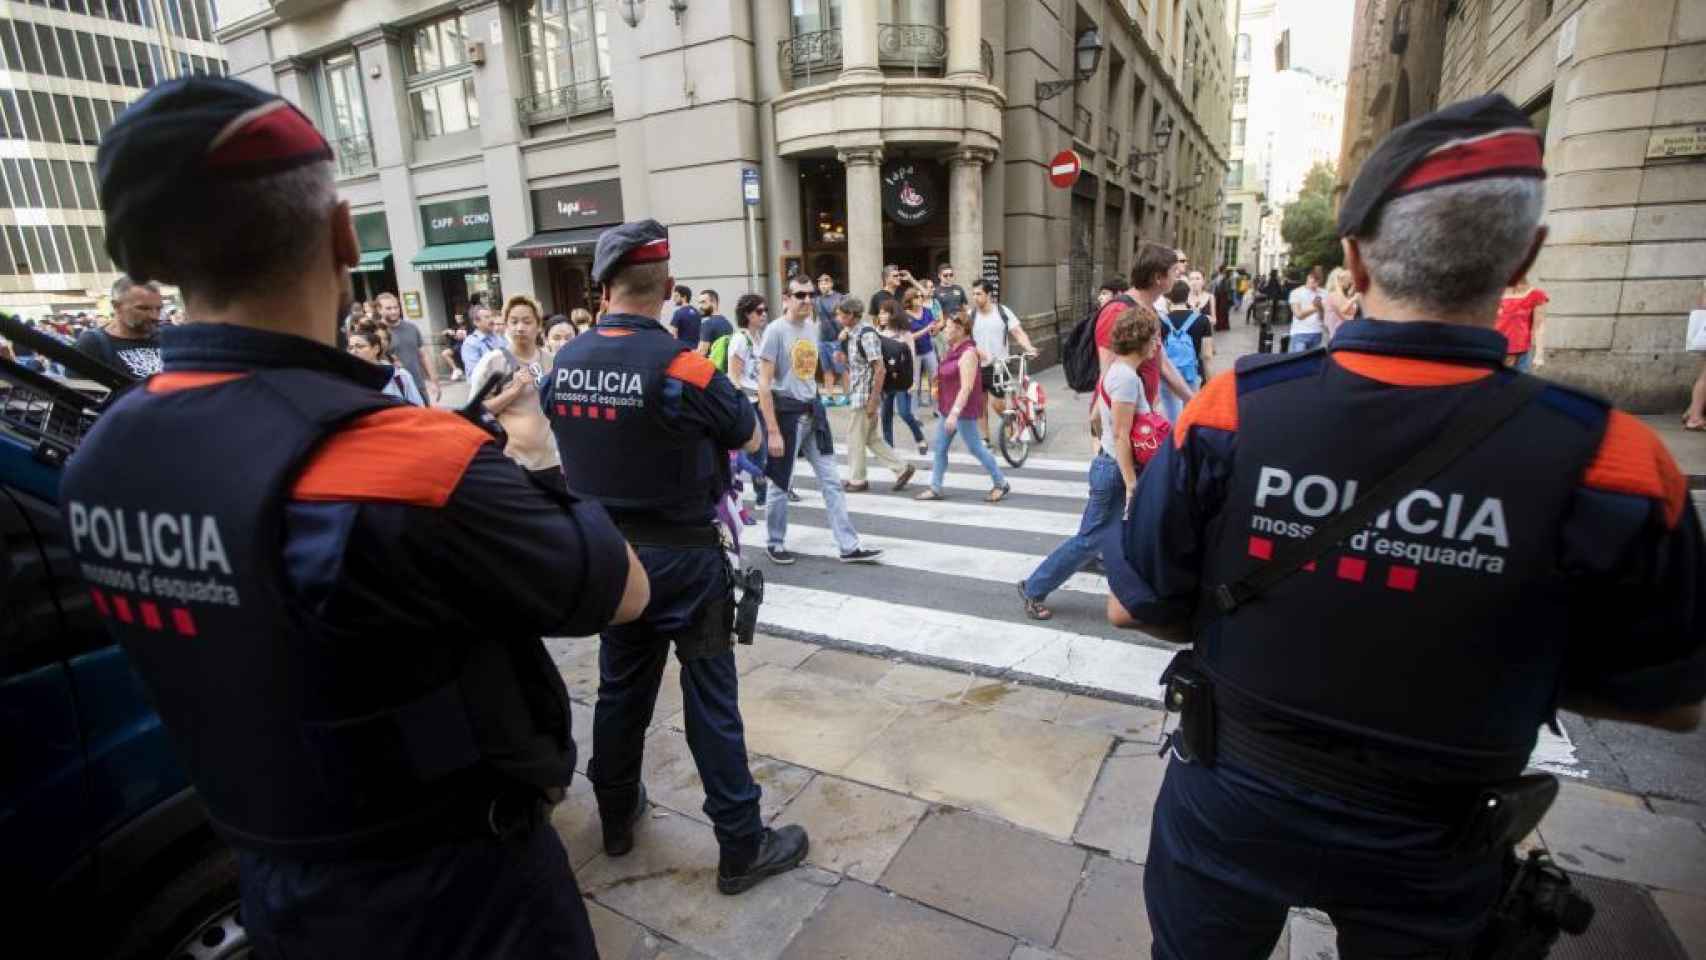 Barcelona-Mossos_d-Esquadra-Policia_autonomica-Politica_417969901_131337085_1706x960.jpg